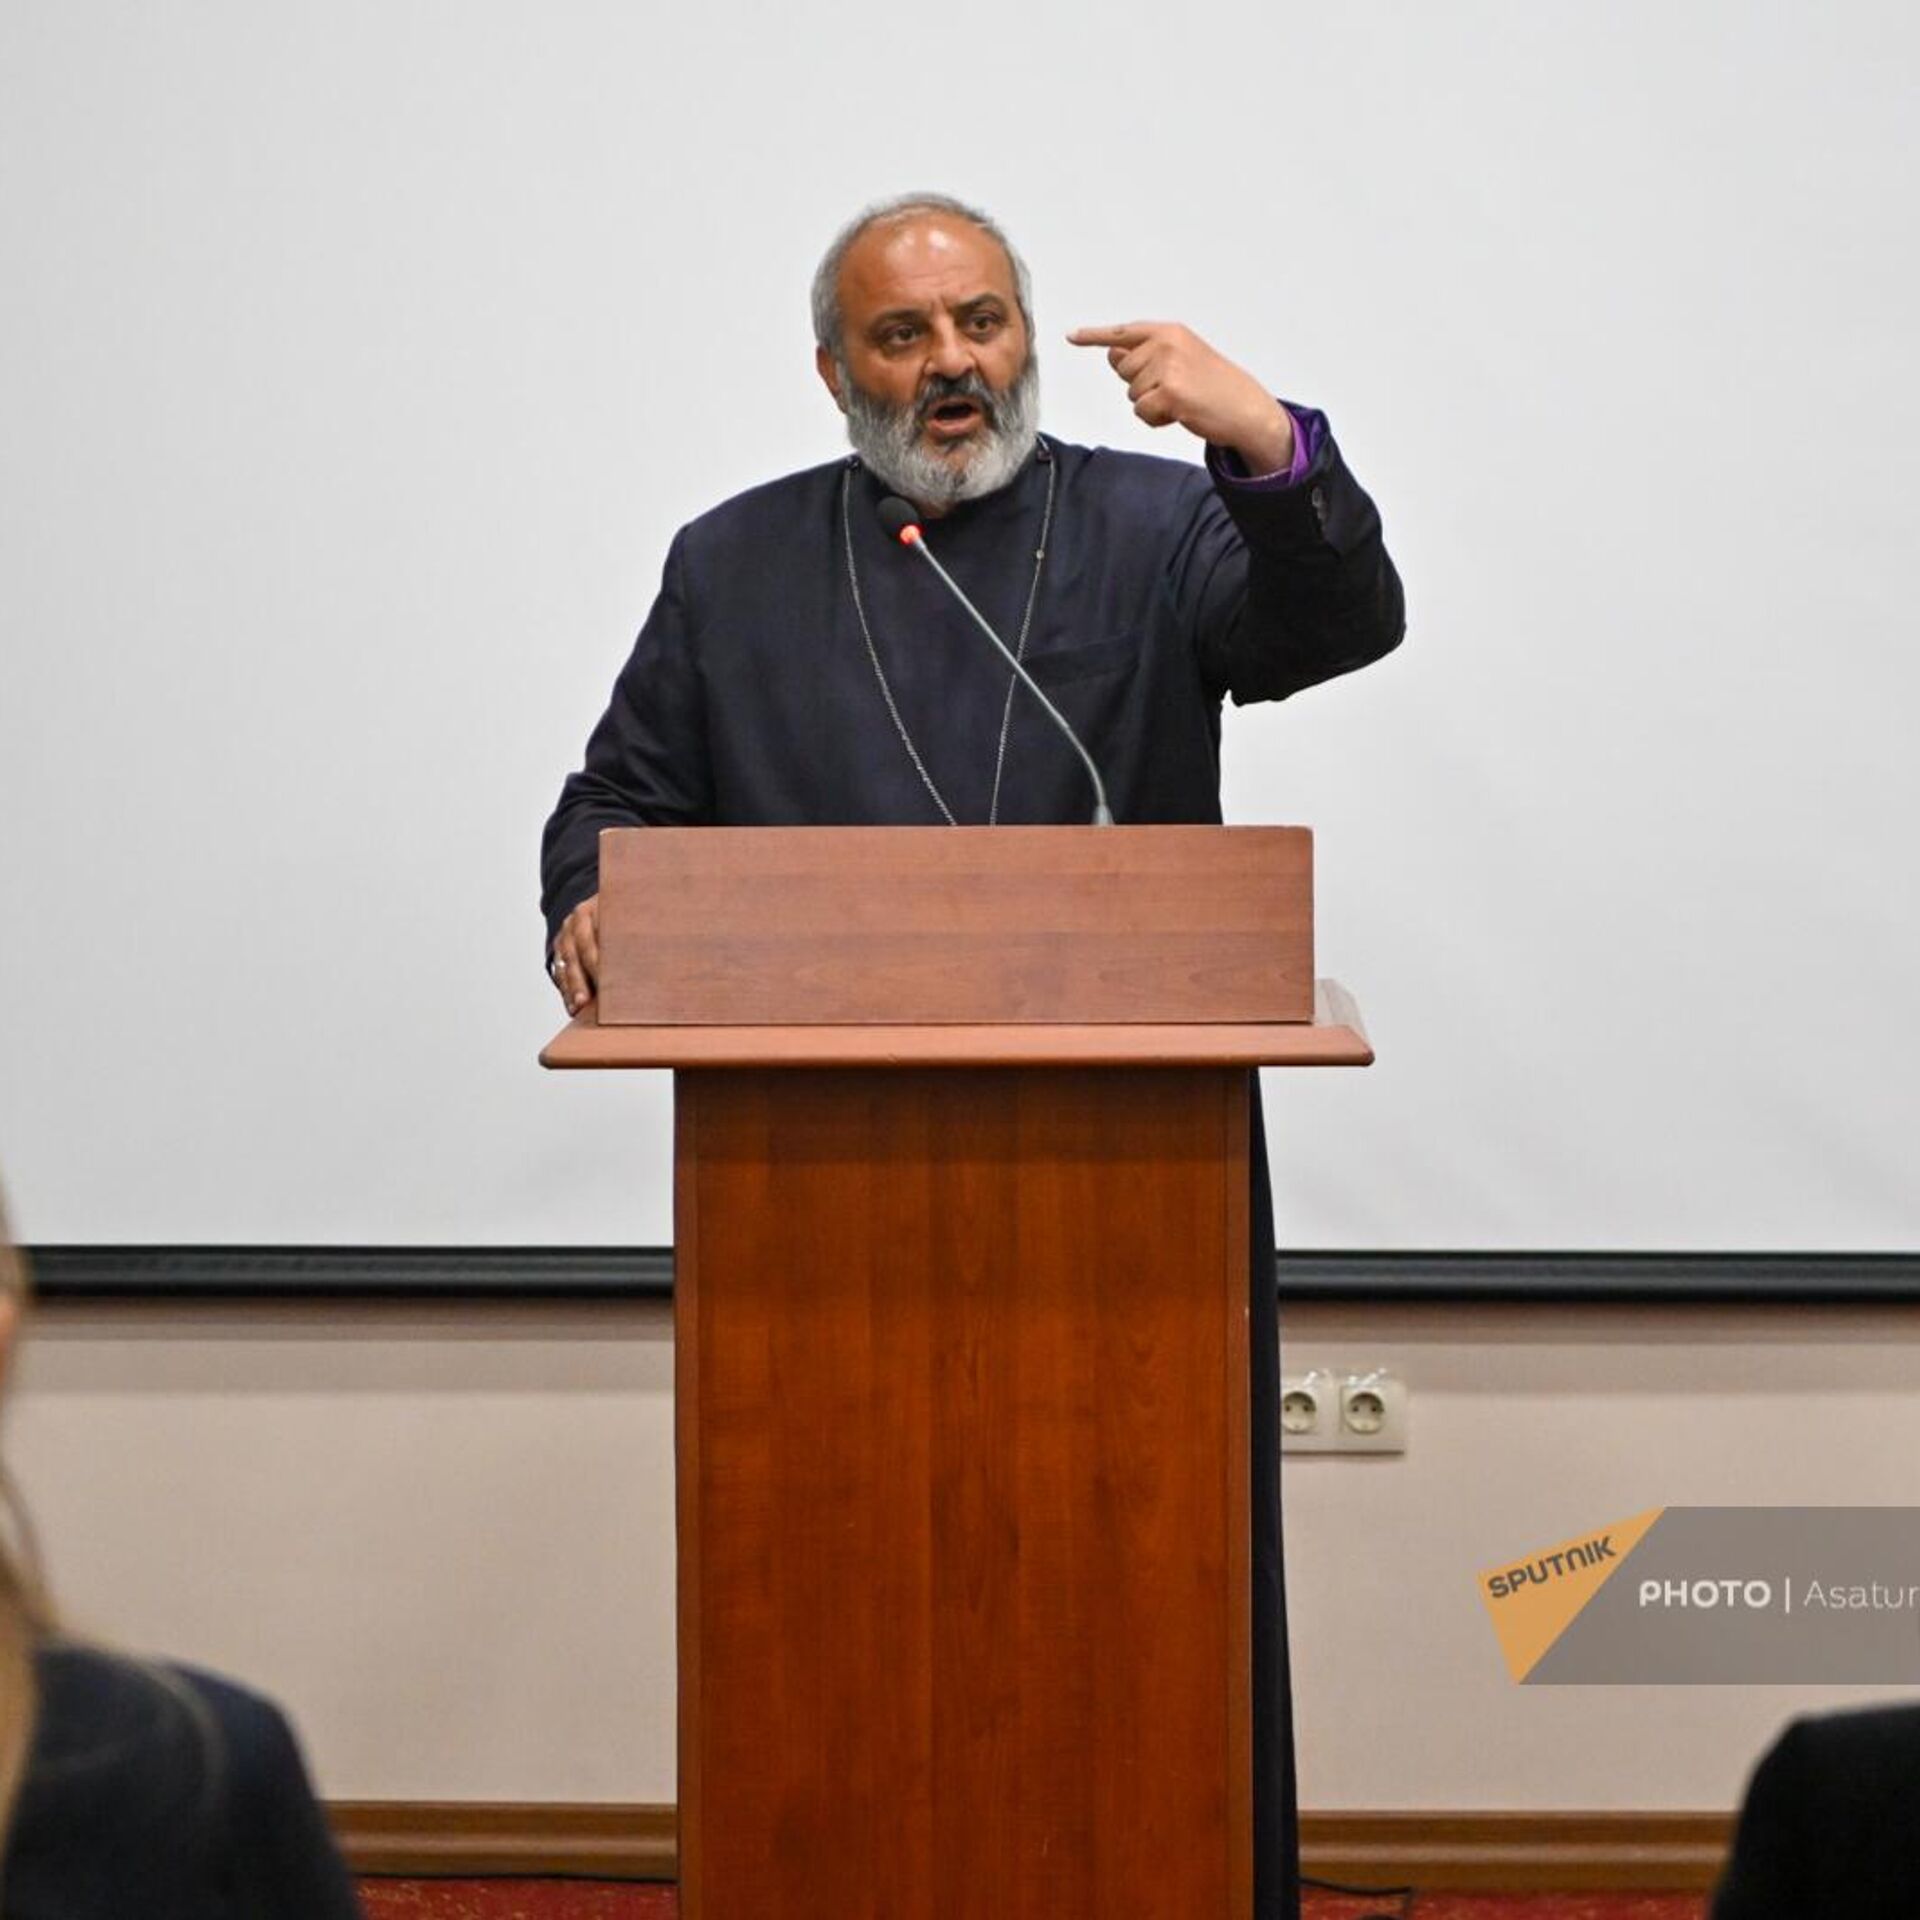 Архиепископ Армянской апостольской церкви Баграт Галстанян может возглавить Армению вместо Пашиняна